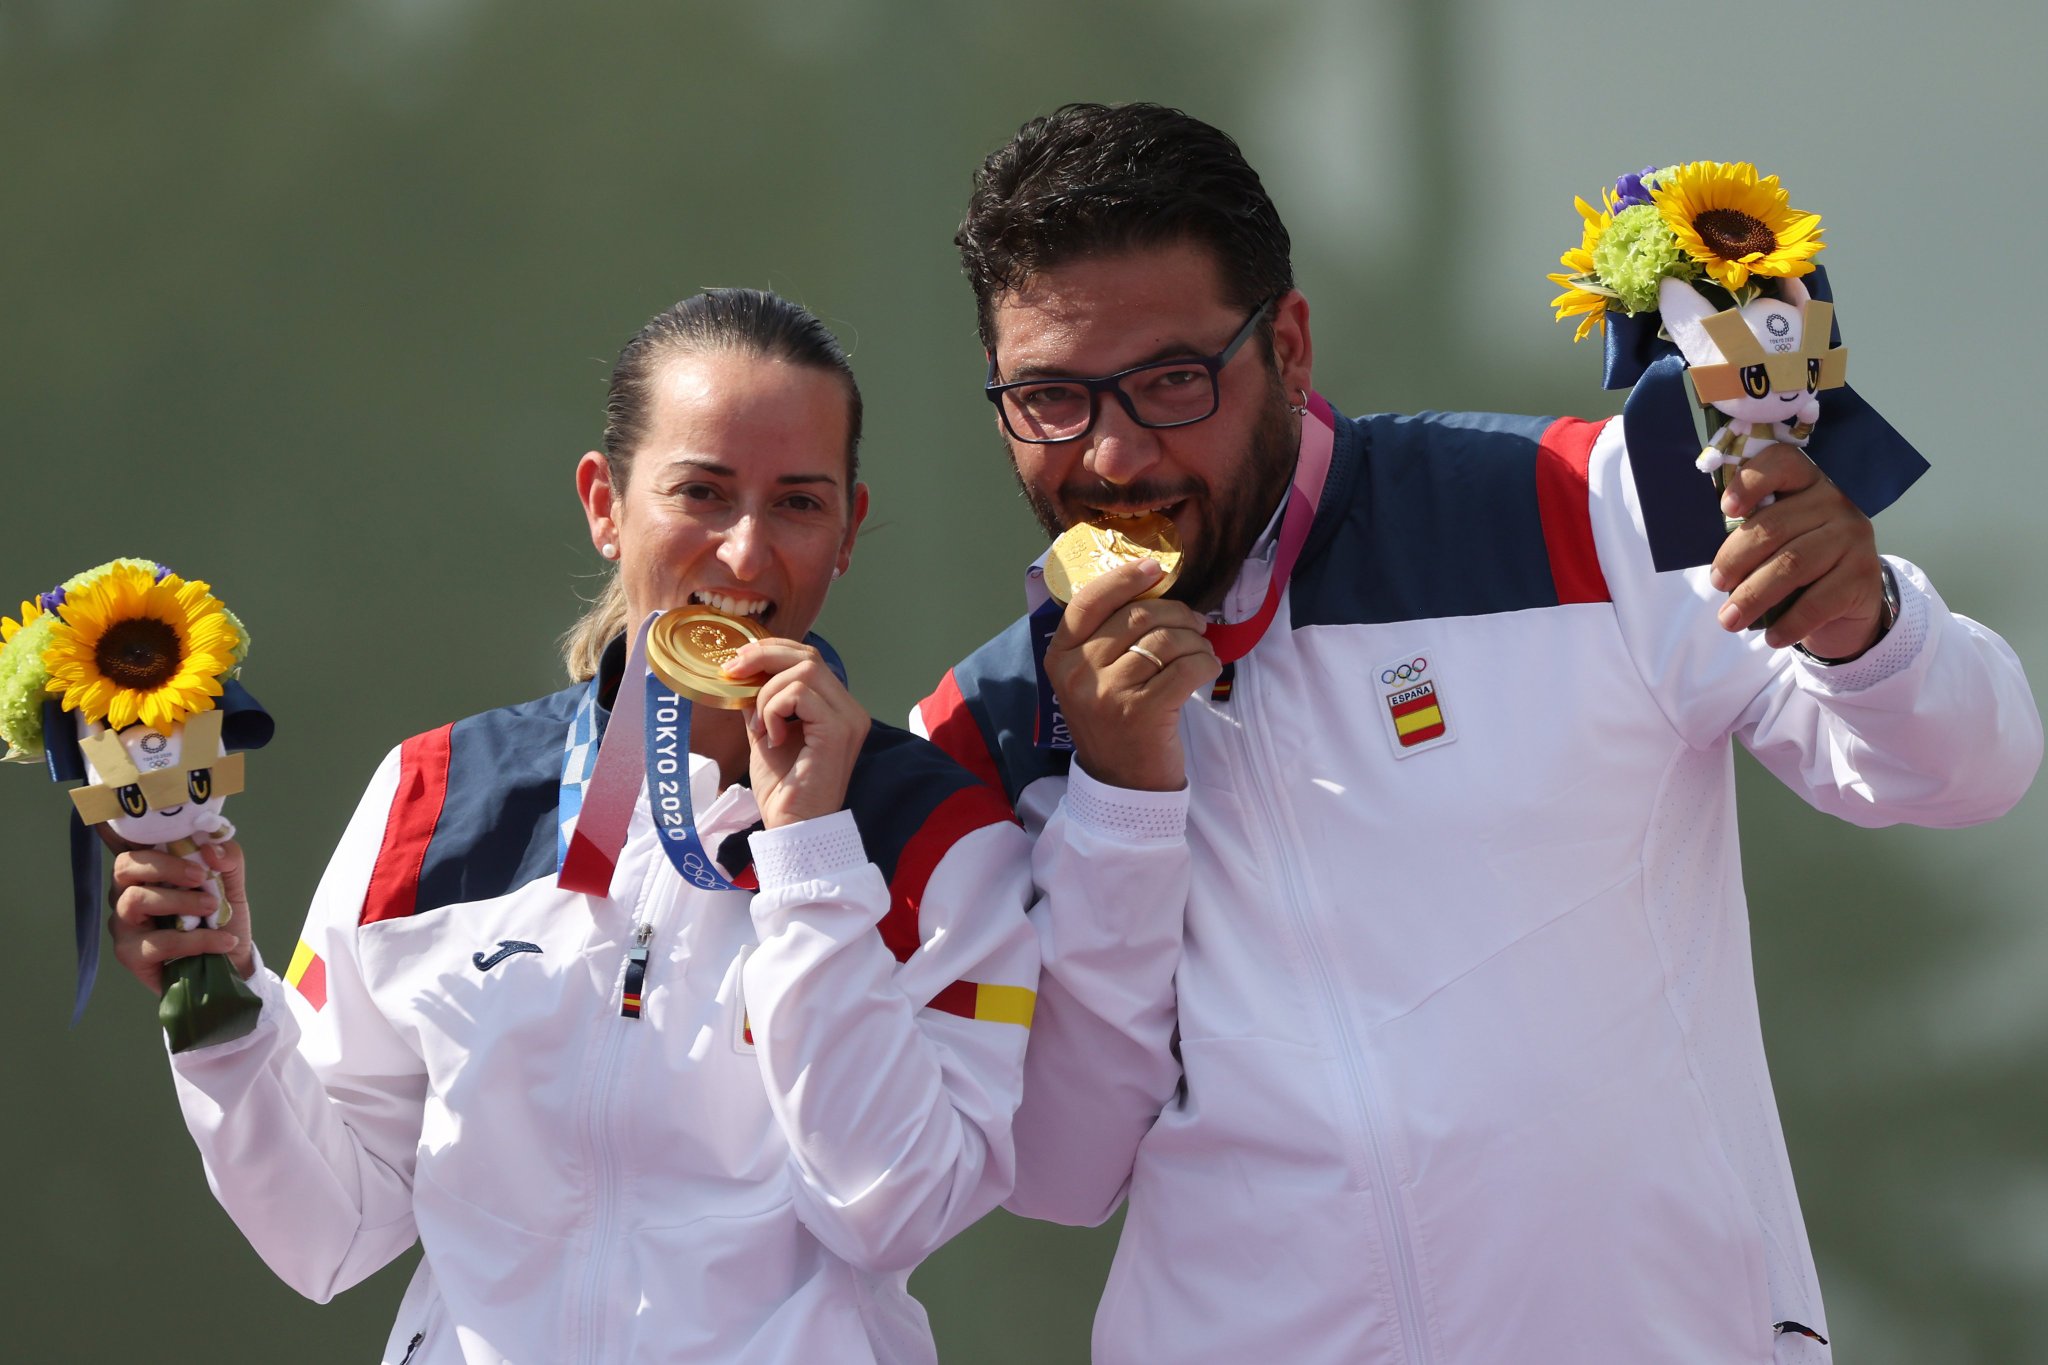 Los campeones olímpicos con su medalla de oro (foto vía @albertofdeztiro)